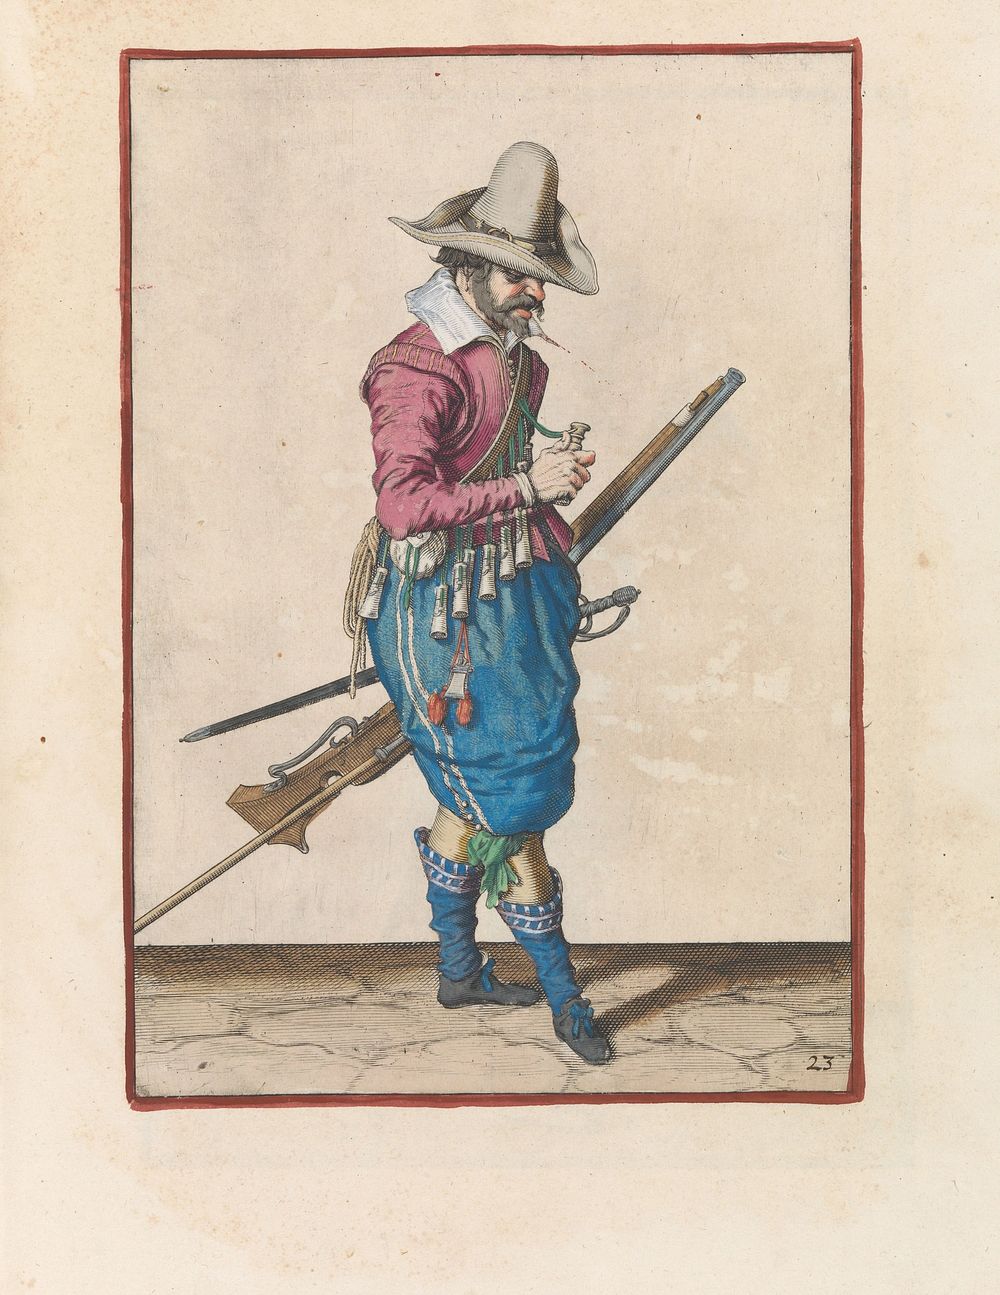 Soldaat met een musket die een kruitmaat opent (c. 1597 - 1607) by Jacques de Gheyn II and Jacques de Gheyn II